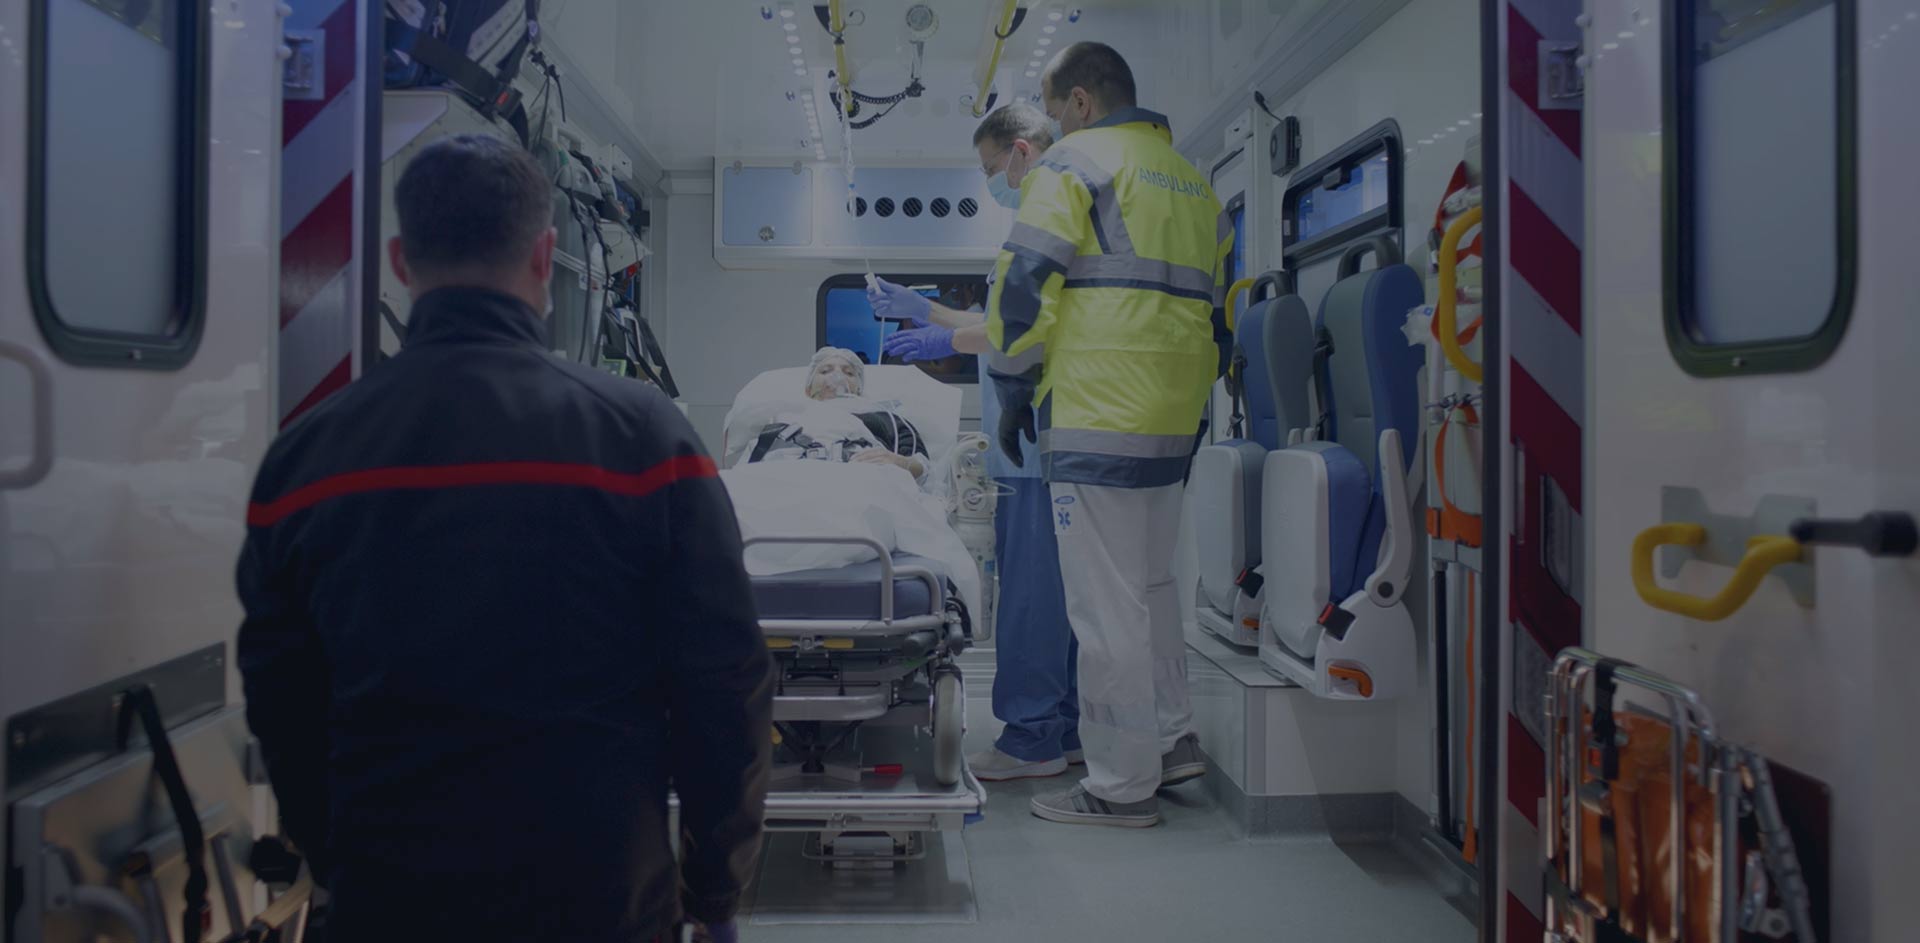 Ambulance : transfert paramédicalisé inter hospitalier Lyon / Rhône-Alpes.